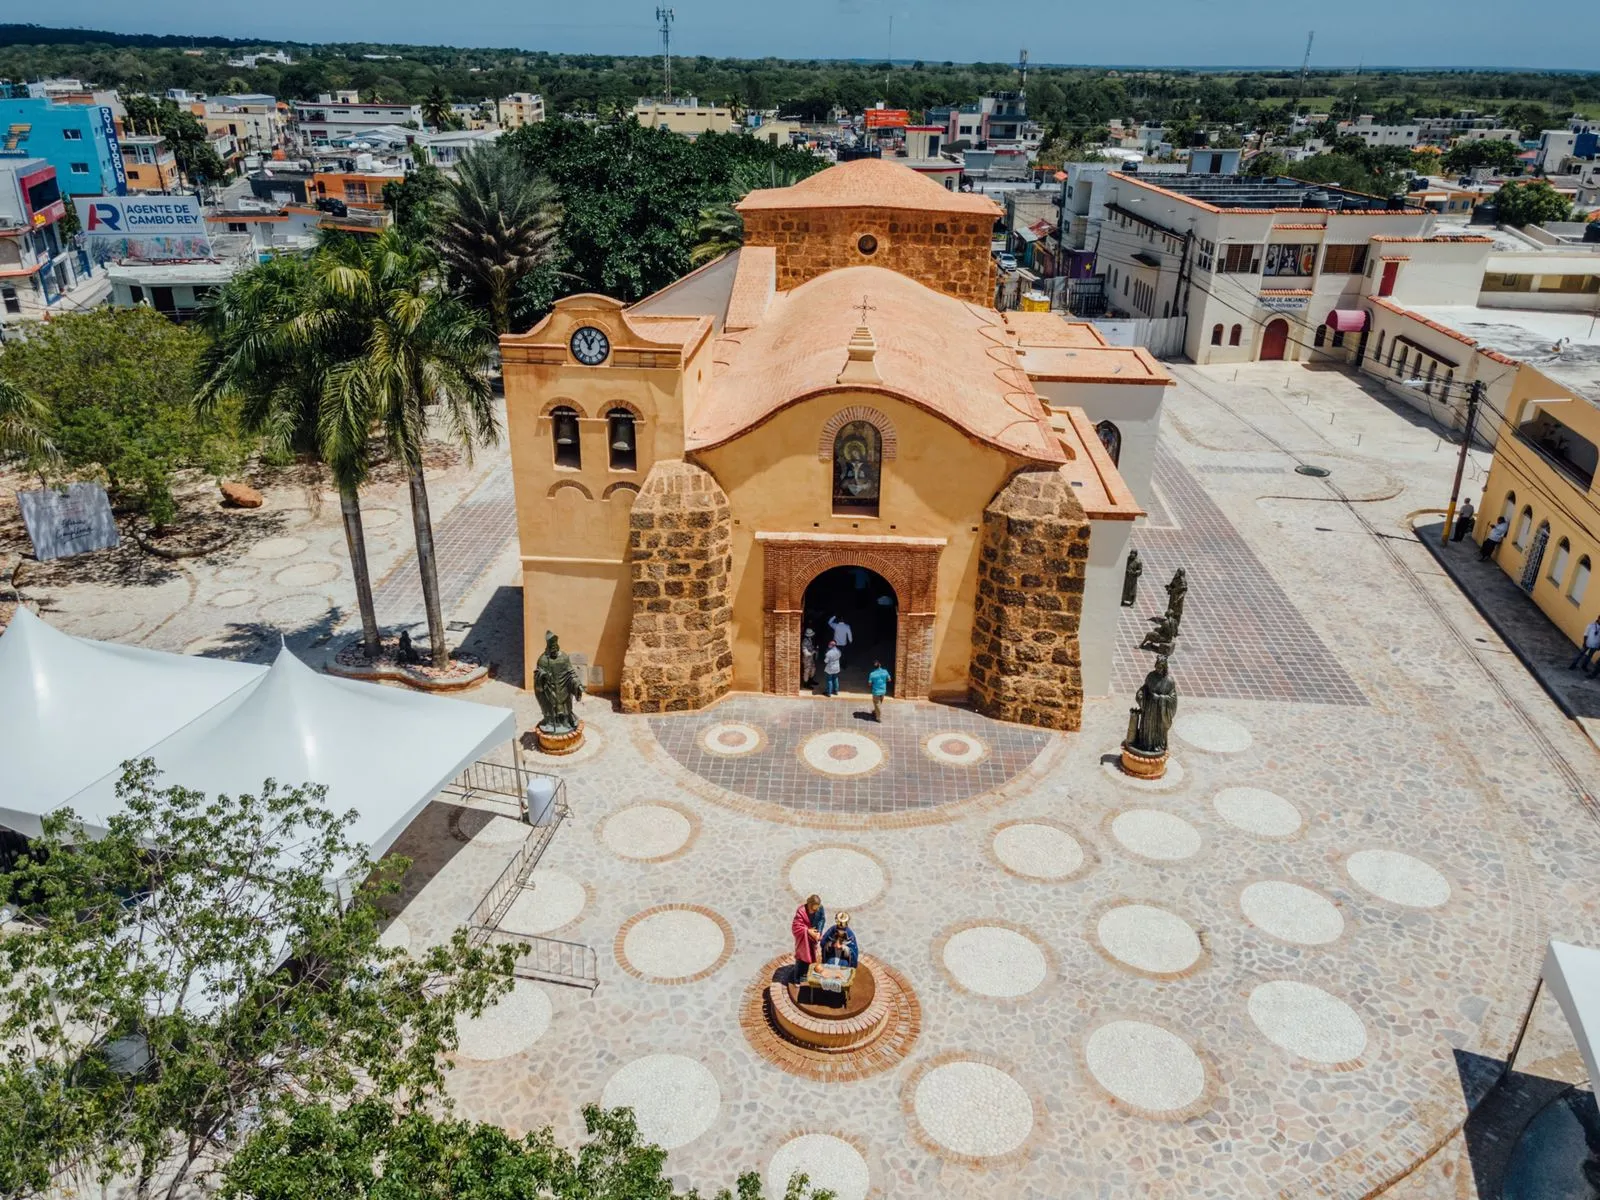 El Santuario de San Dionisio fue erigido hace 510 años y está ubicado frente el Parque Central de Higüey, siendo una de las atracciones principales a nivel turístico en la zona este por su valor histórico y religioso.